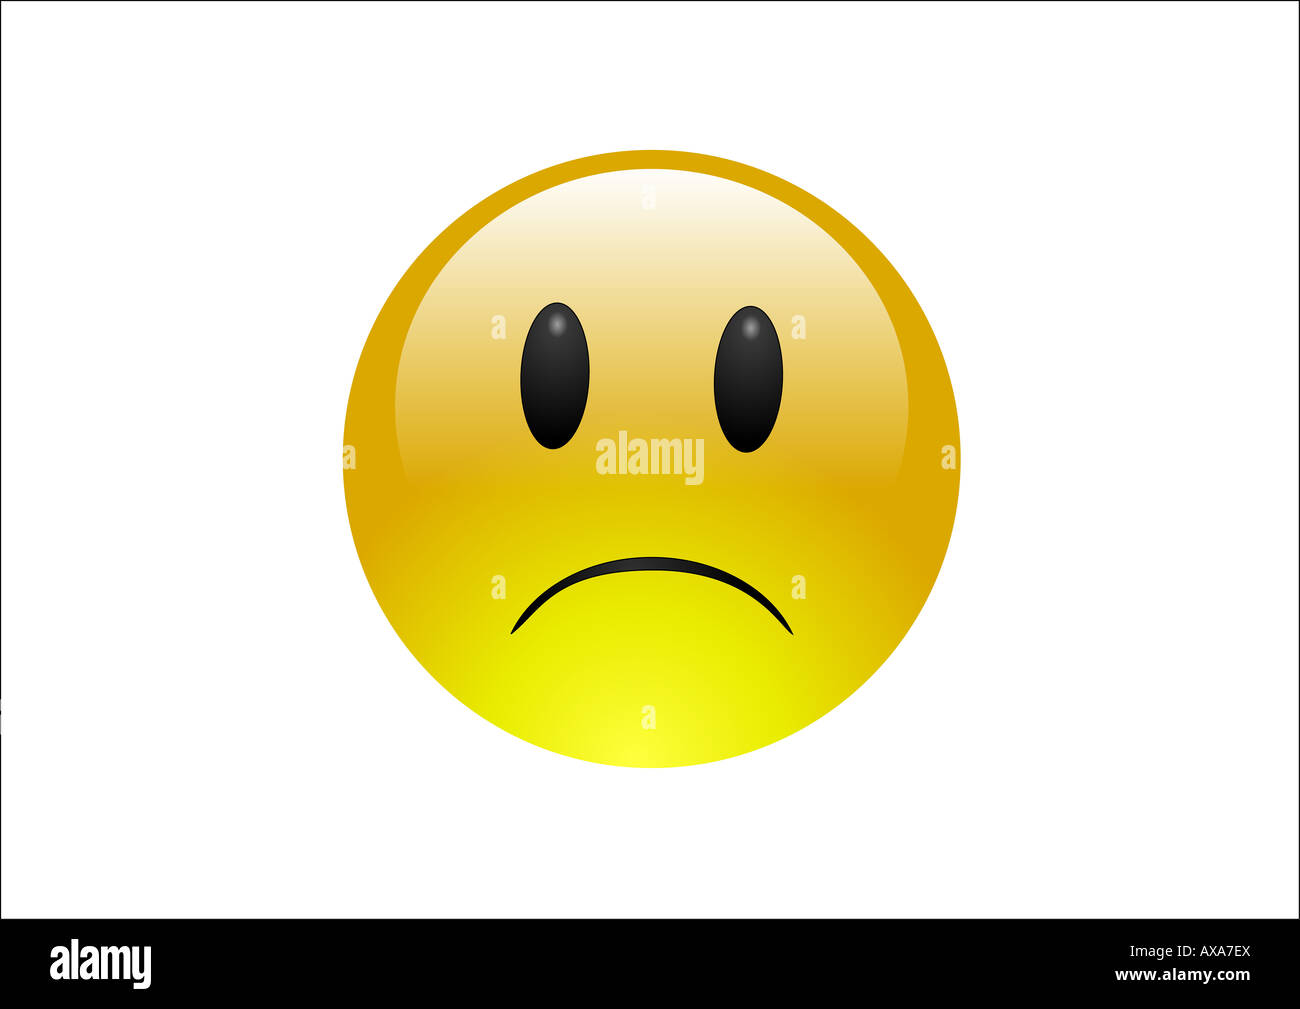 aqua-emoticon-sad-AXA7EX.jpg